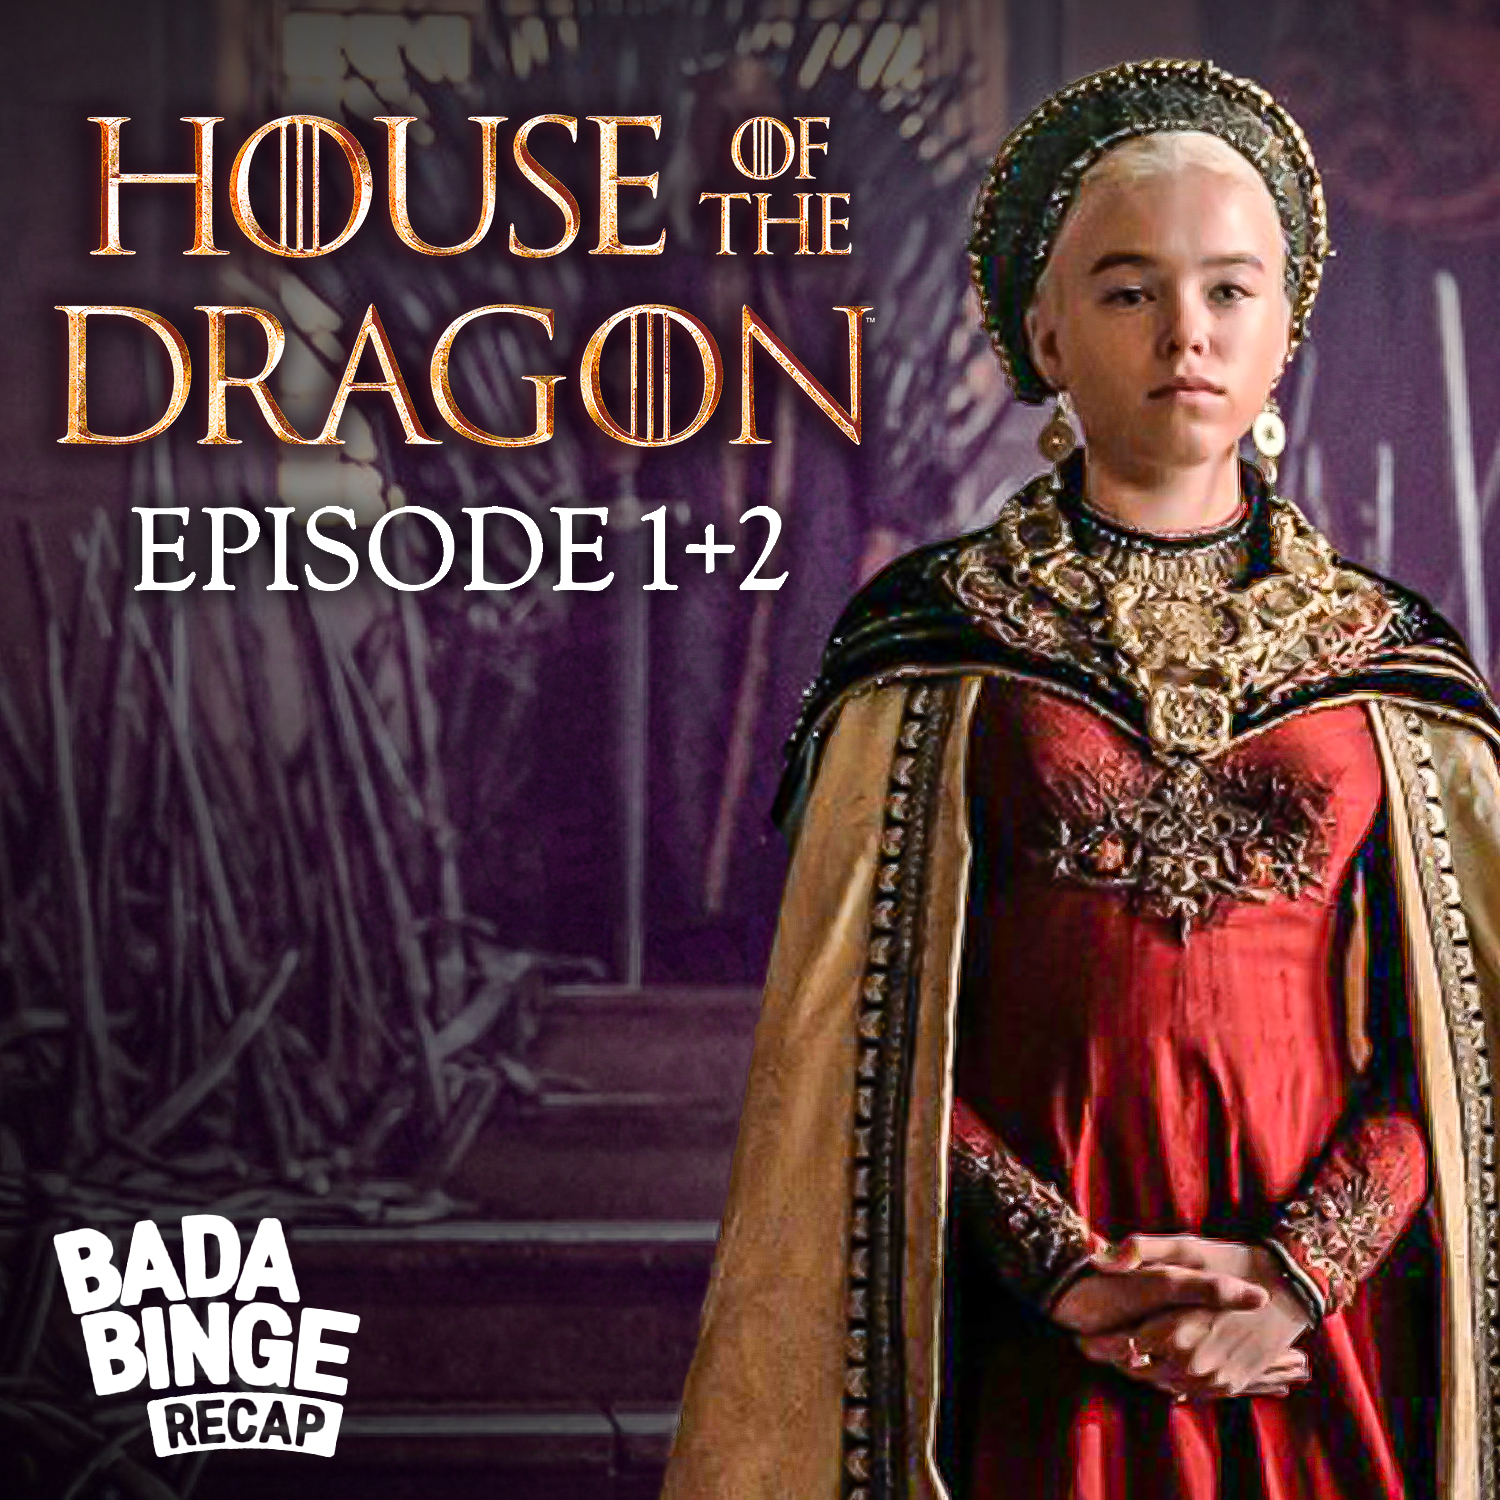 Recap zu Episode 1 + 2 von HOUSE OF THE DRAGON